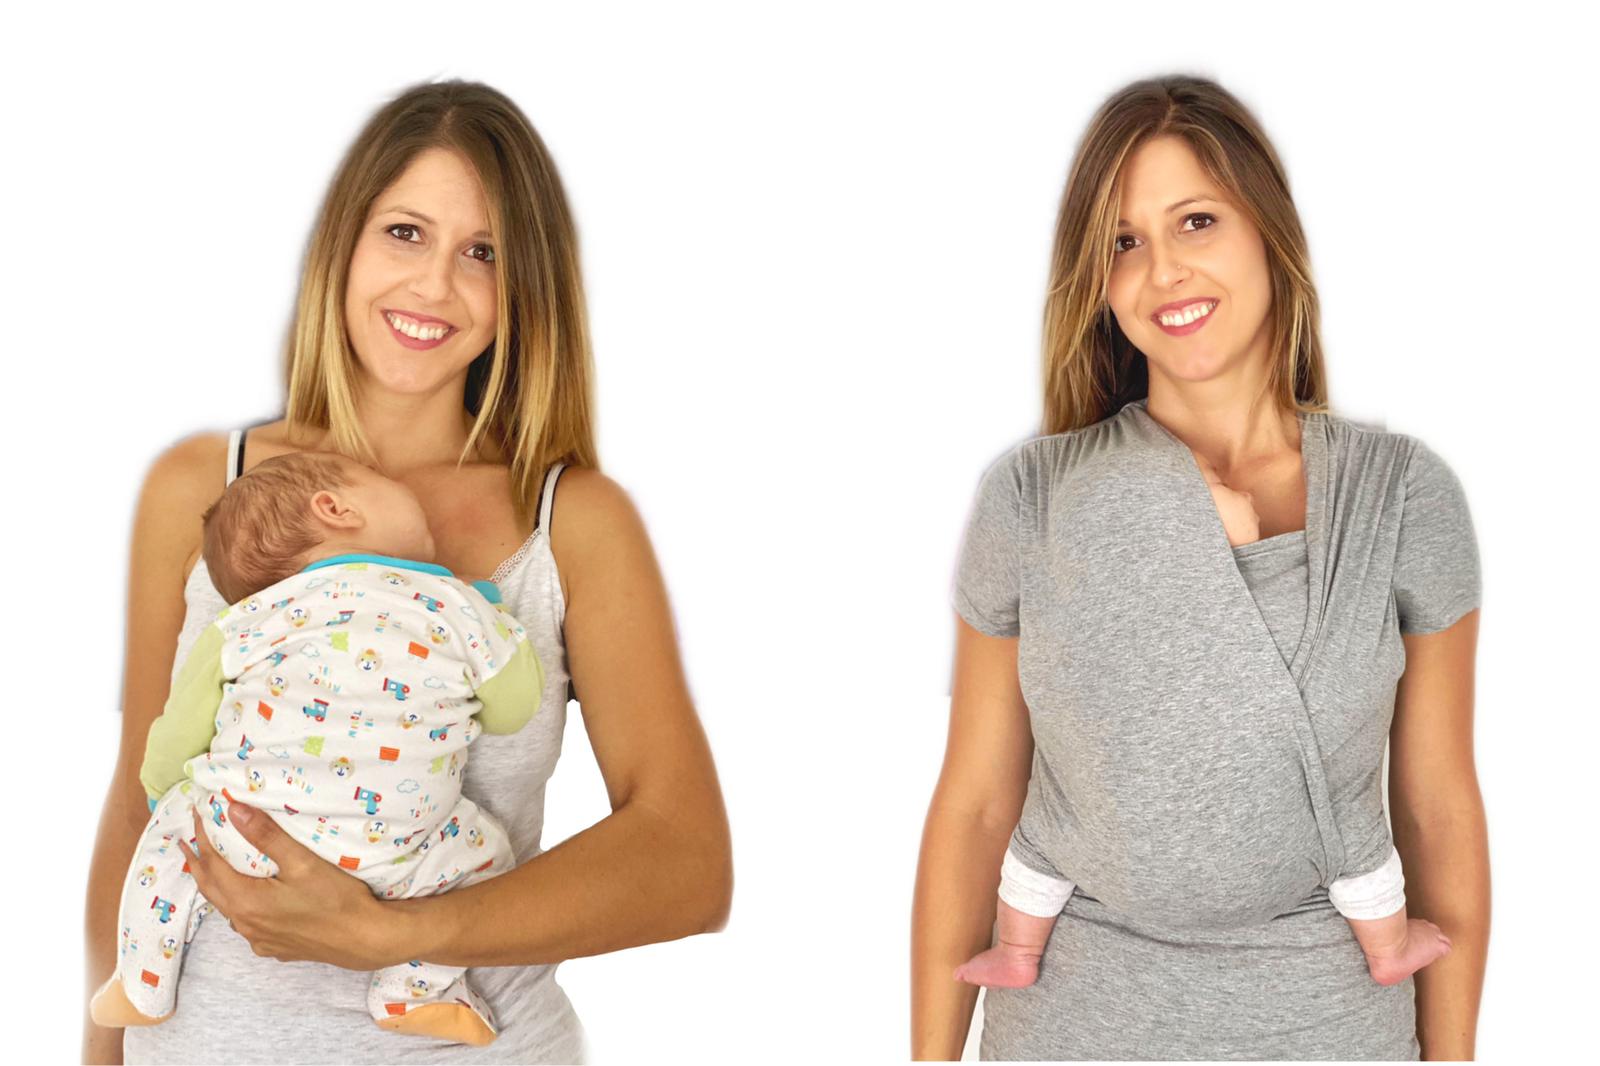 detalle de ergonomia para el bebe en la camiseta de porteo quokkababy